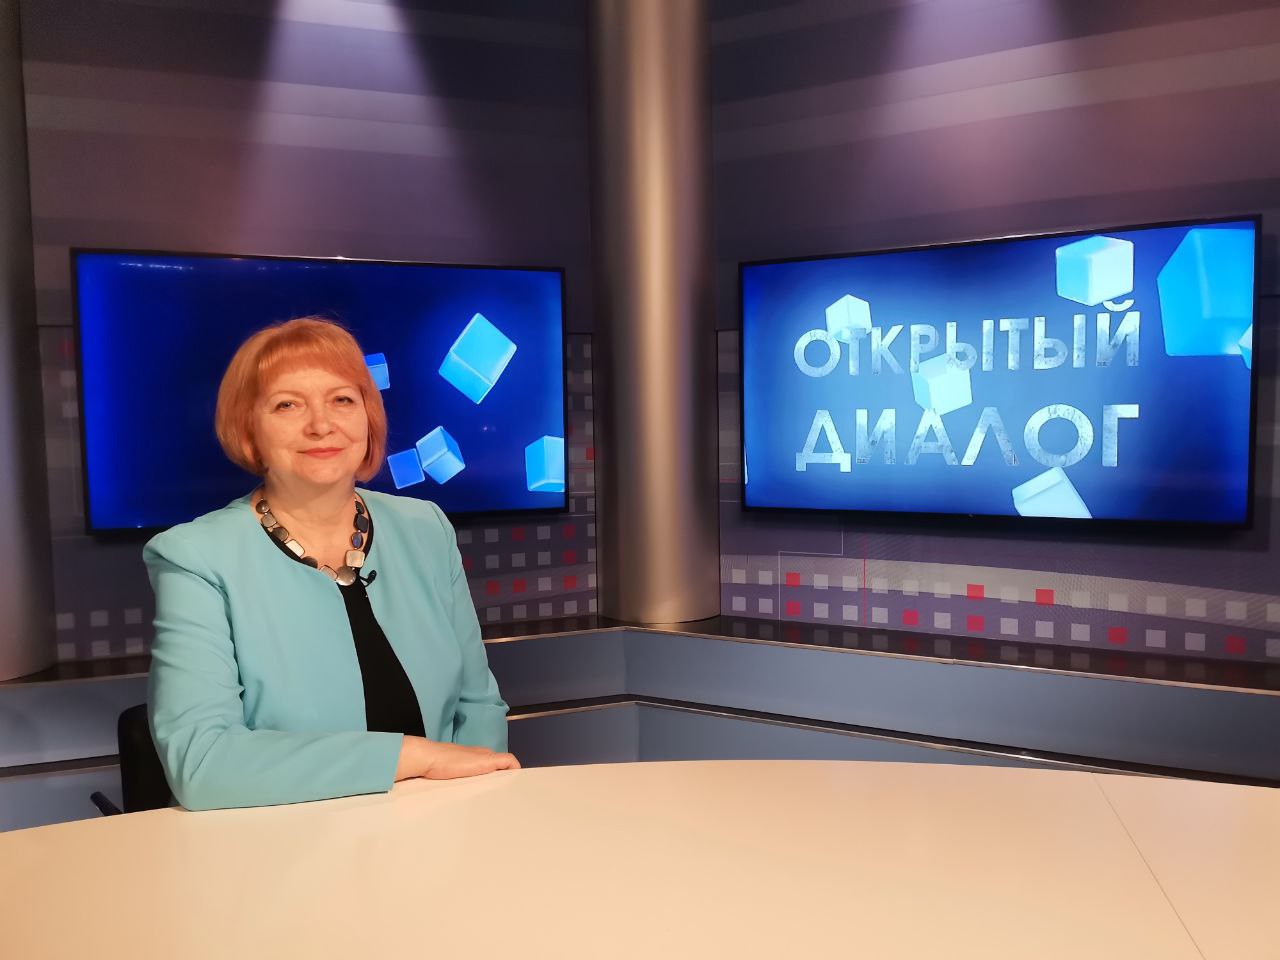 Людмила Ефимище в программе "Открытый диалог" от 10 апреля